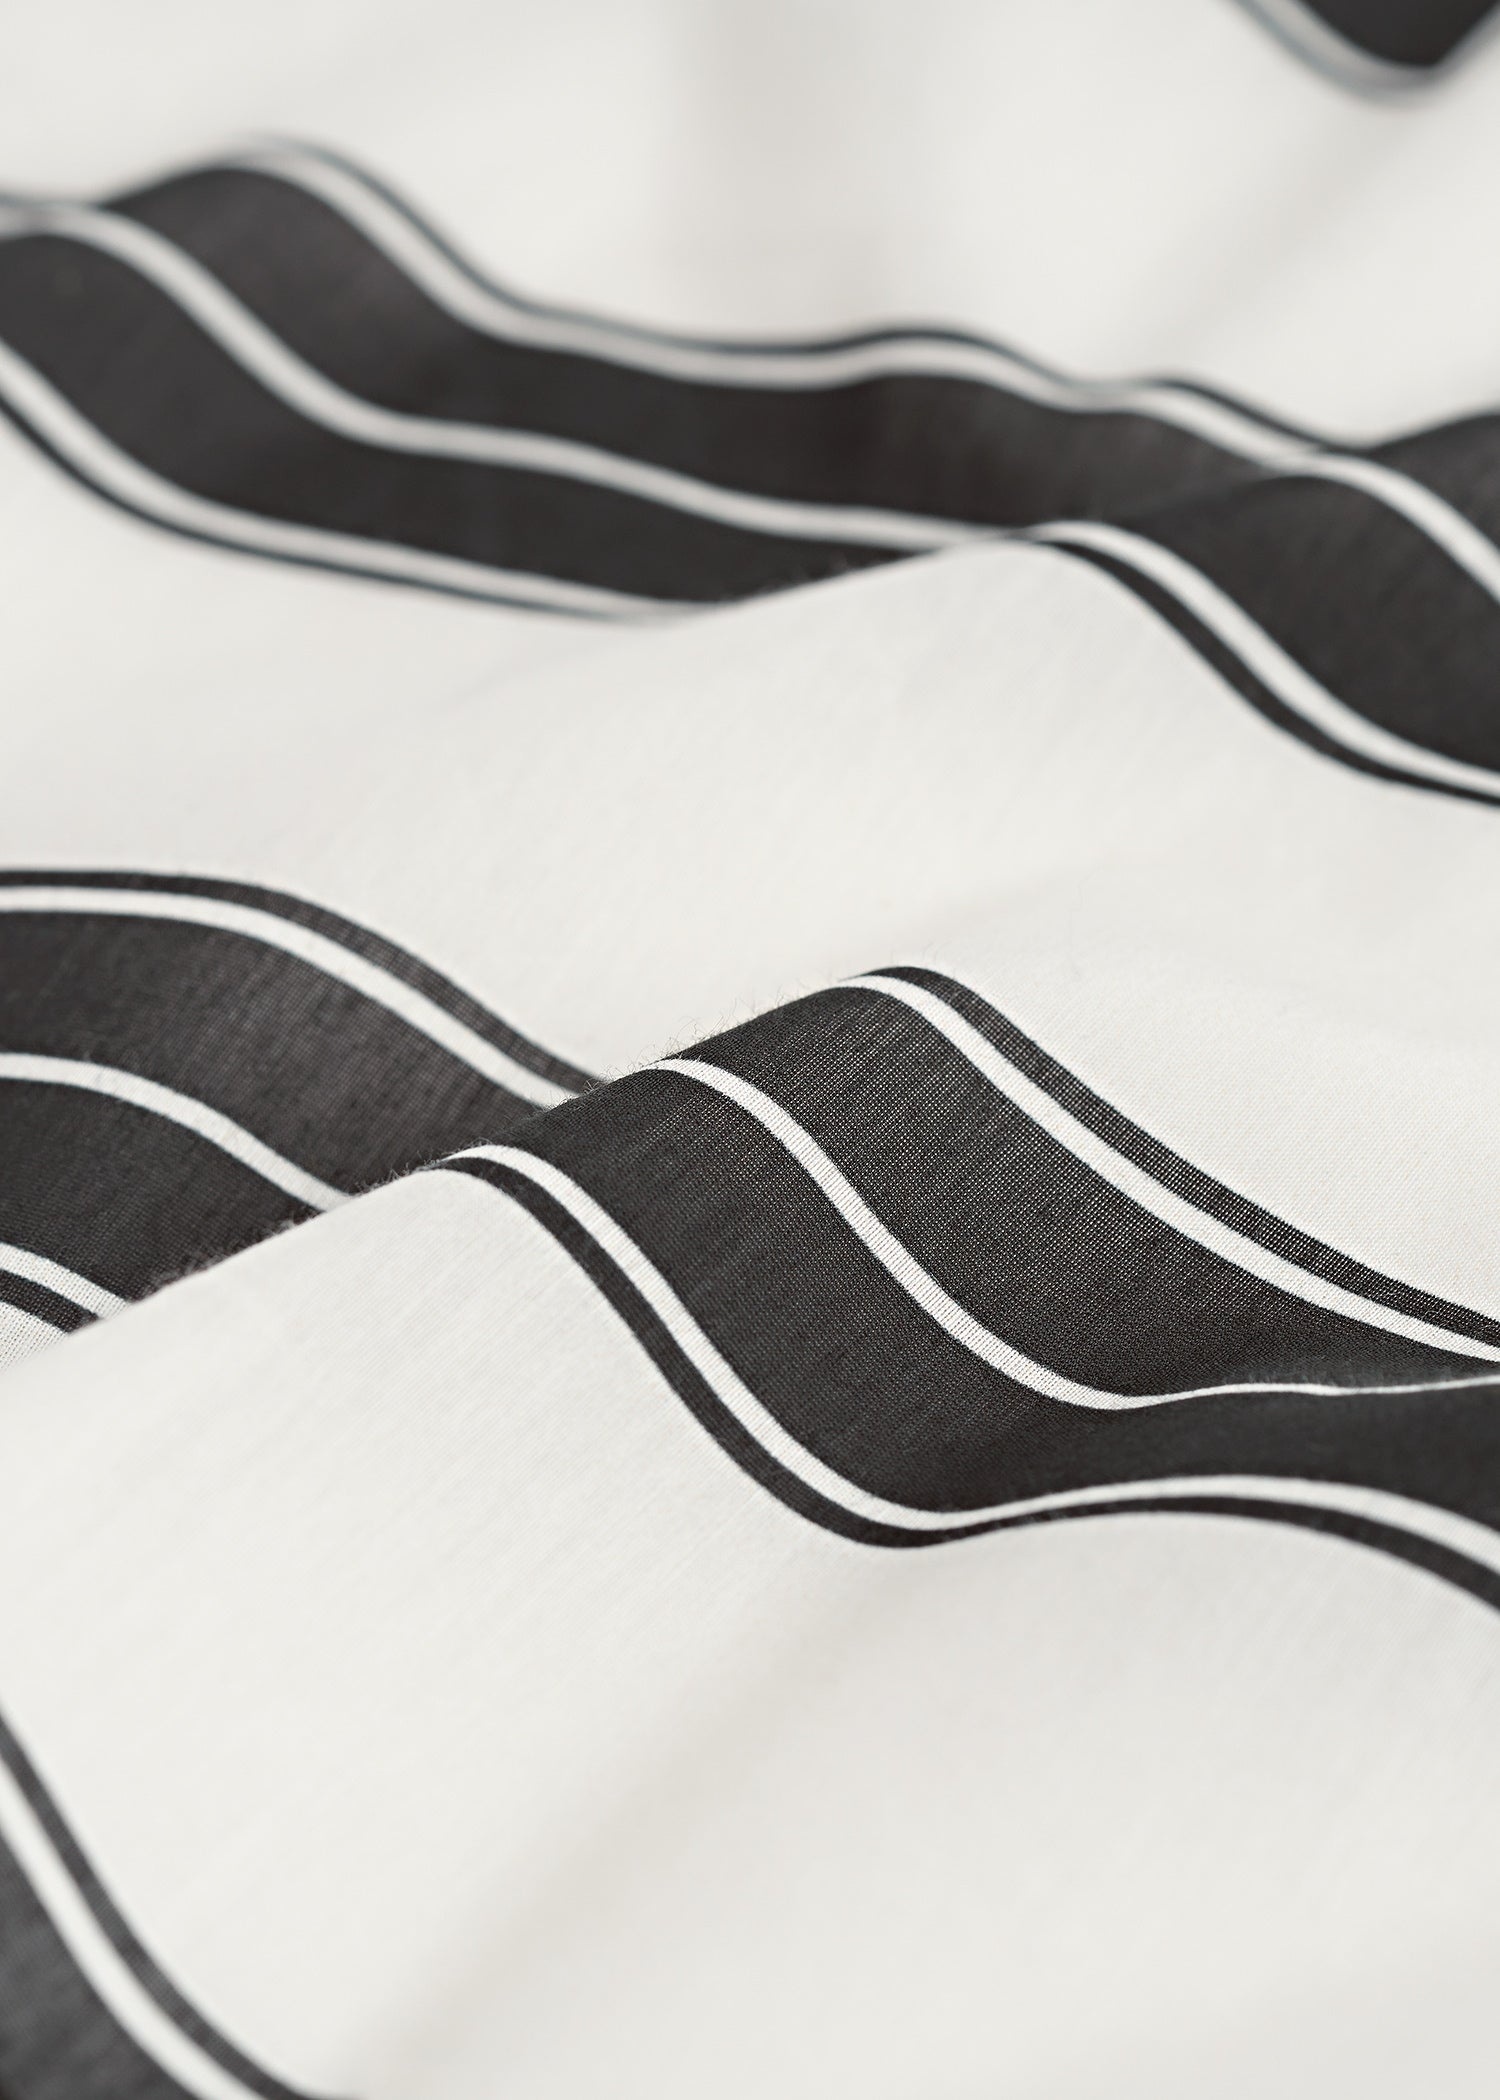 Striped cotton silk bandana black/white - 5